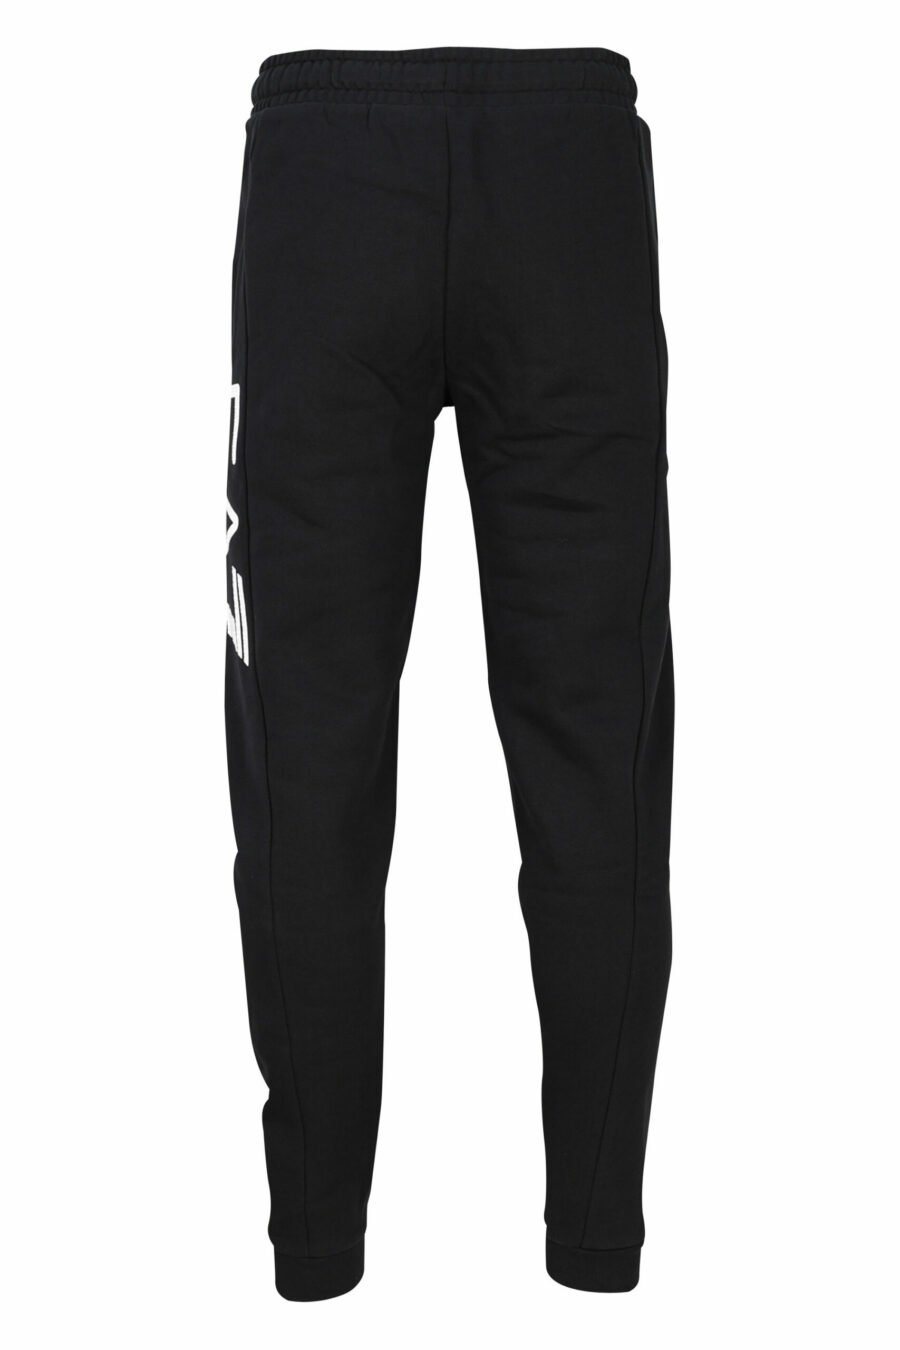 Pantalón de chándal negro con logo vertical - 8057767668761 2 scaled